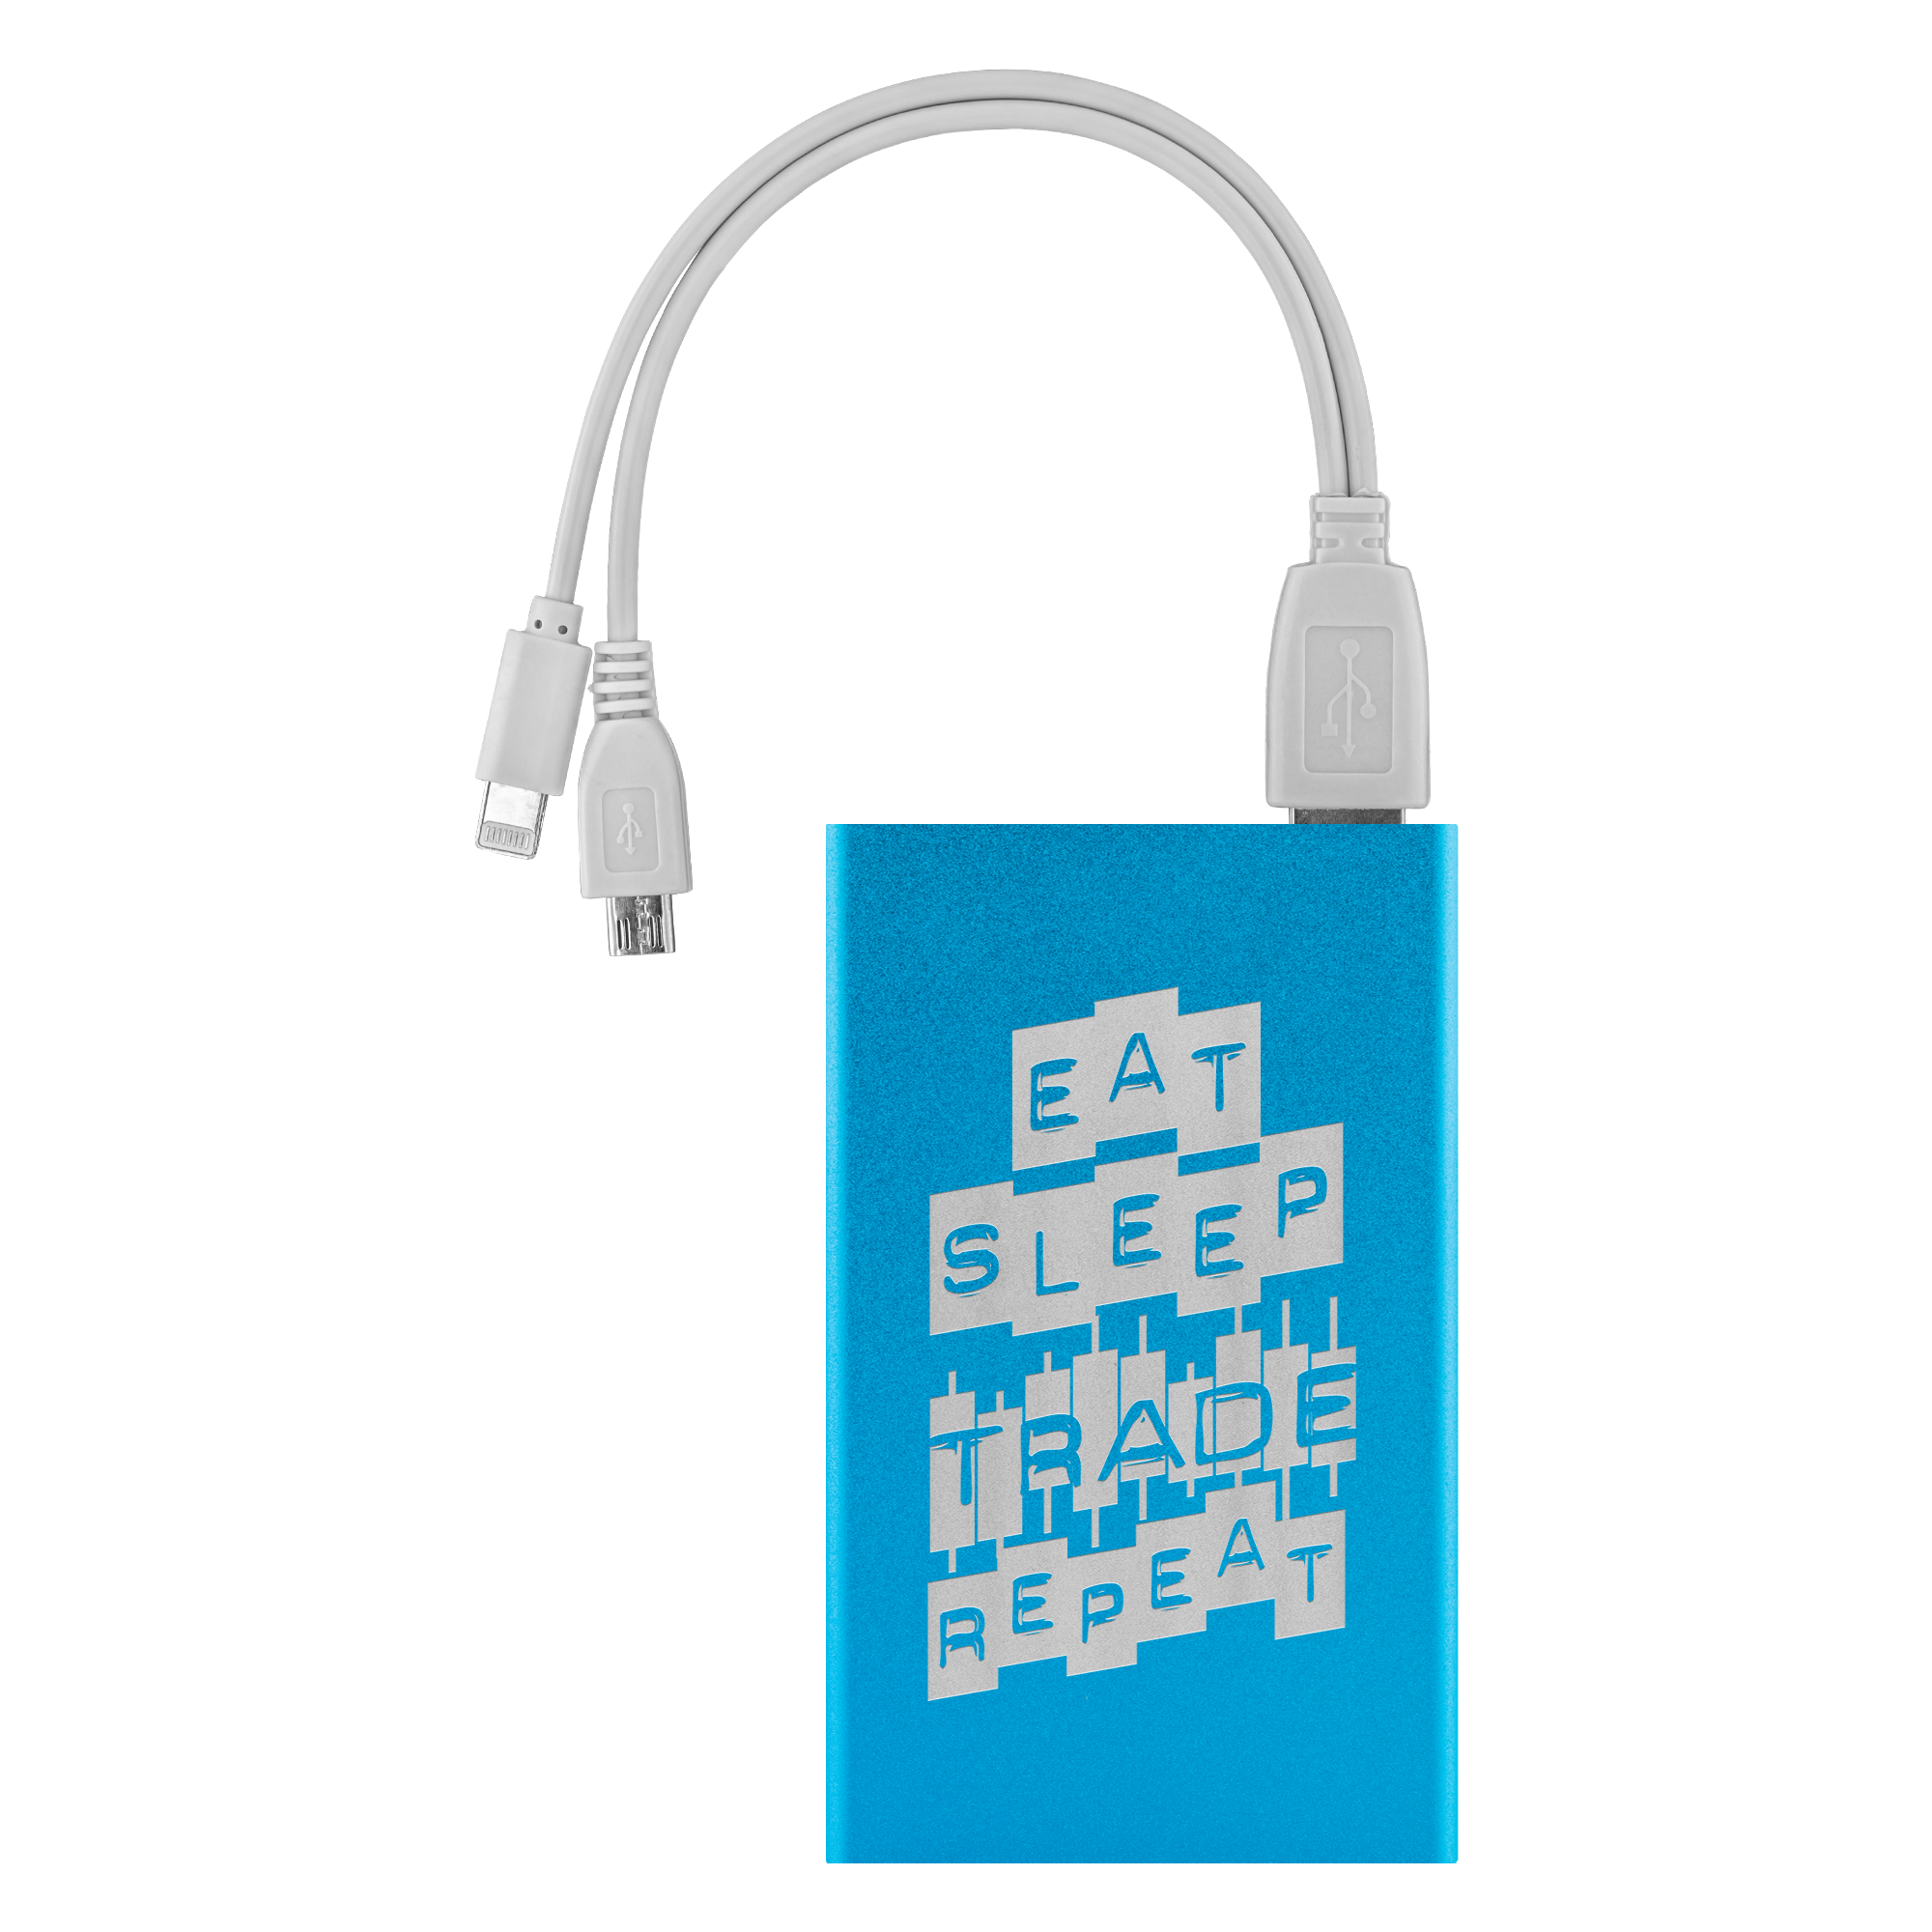 Comprar azul-claro Bancos de energía: repetición del comercio Eat Sleep